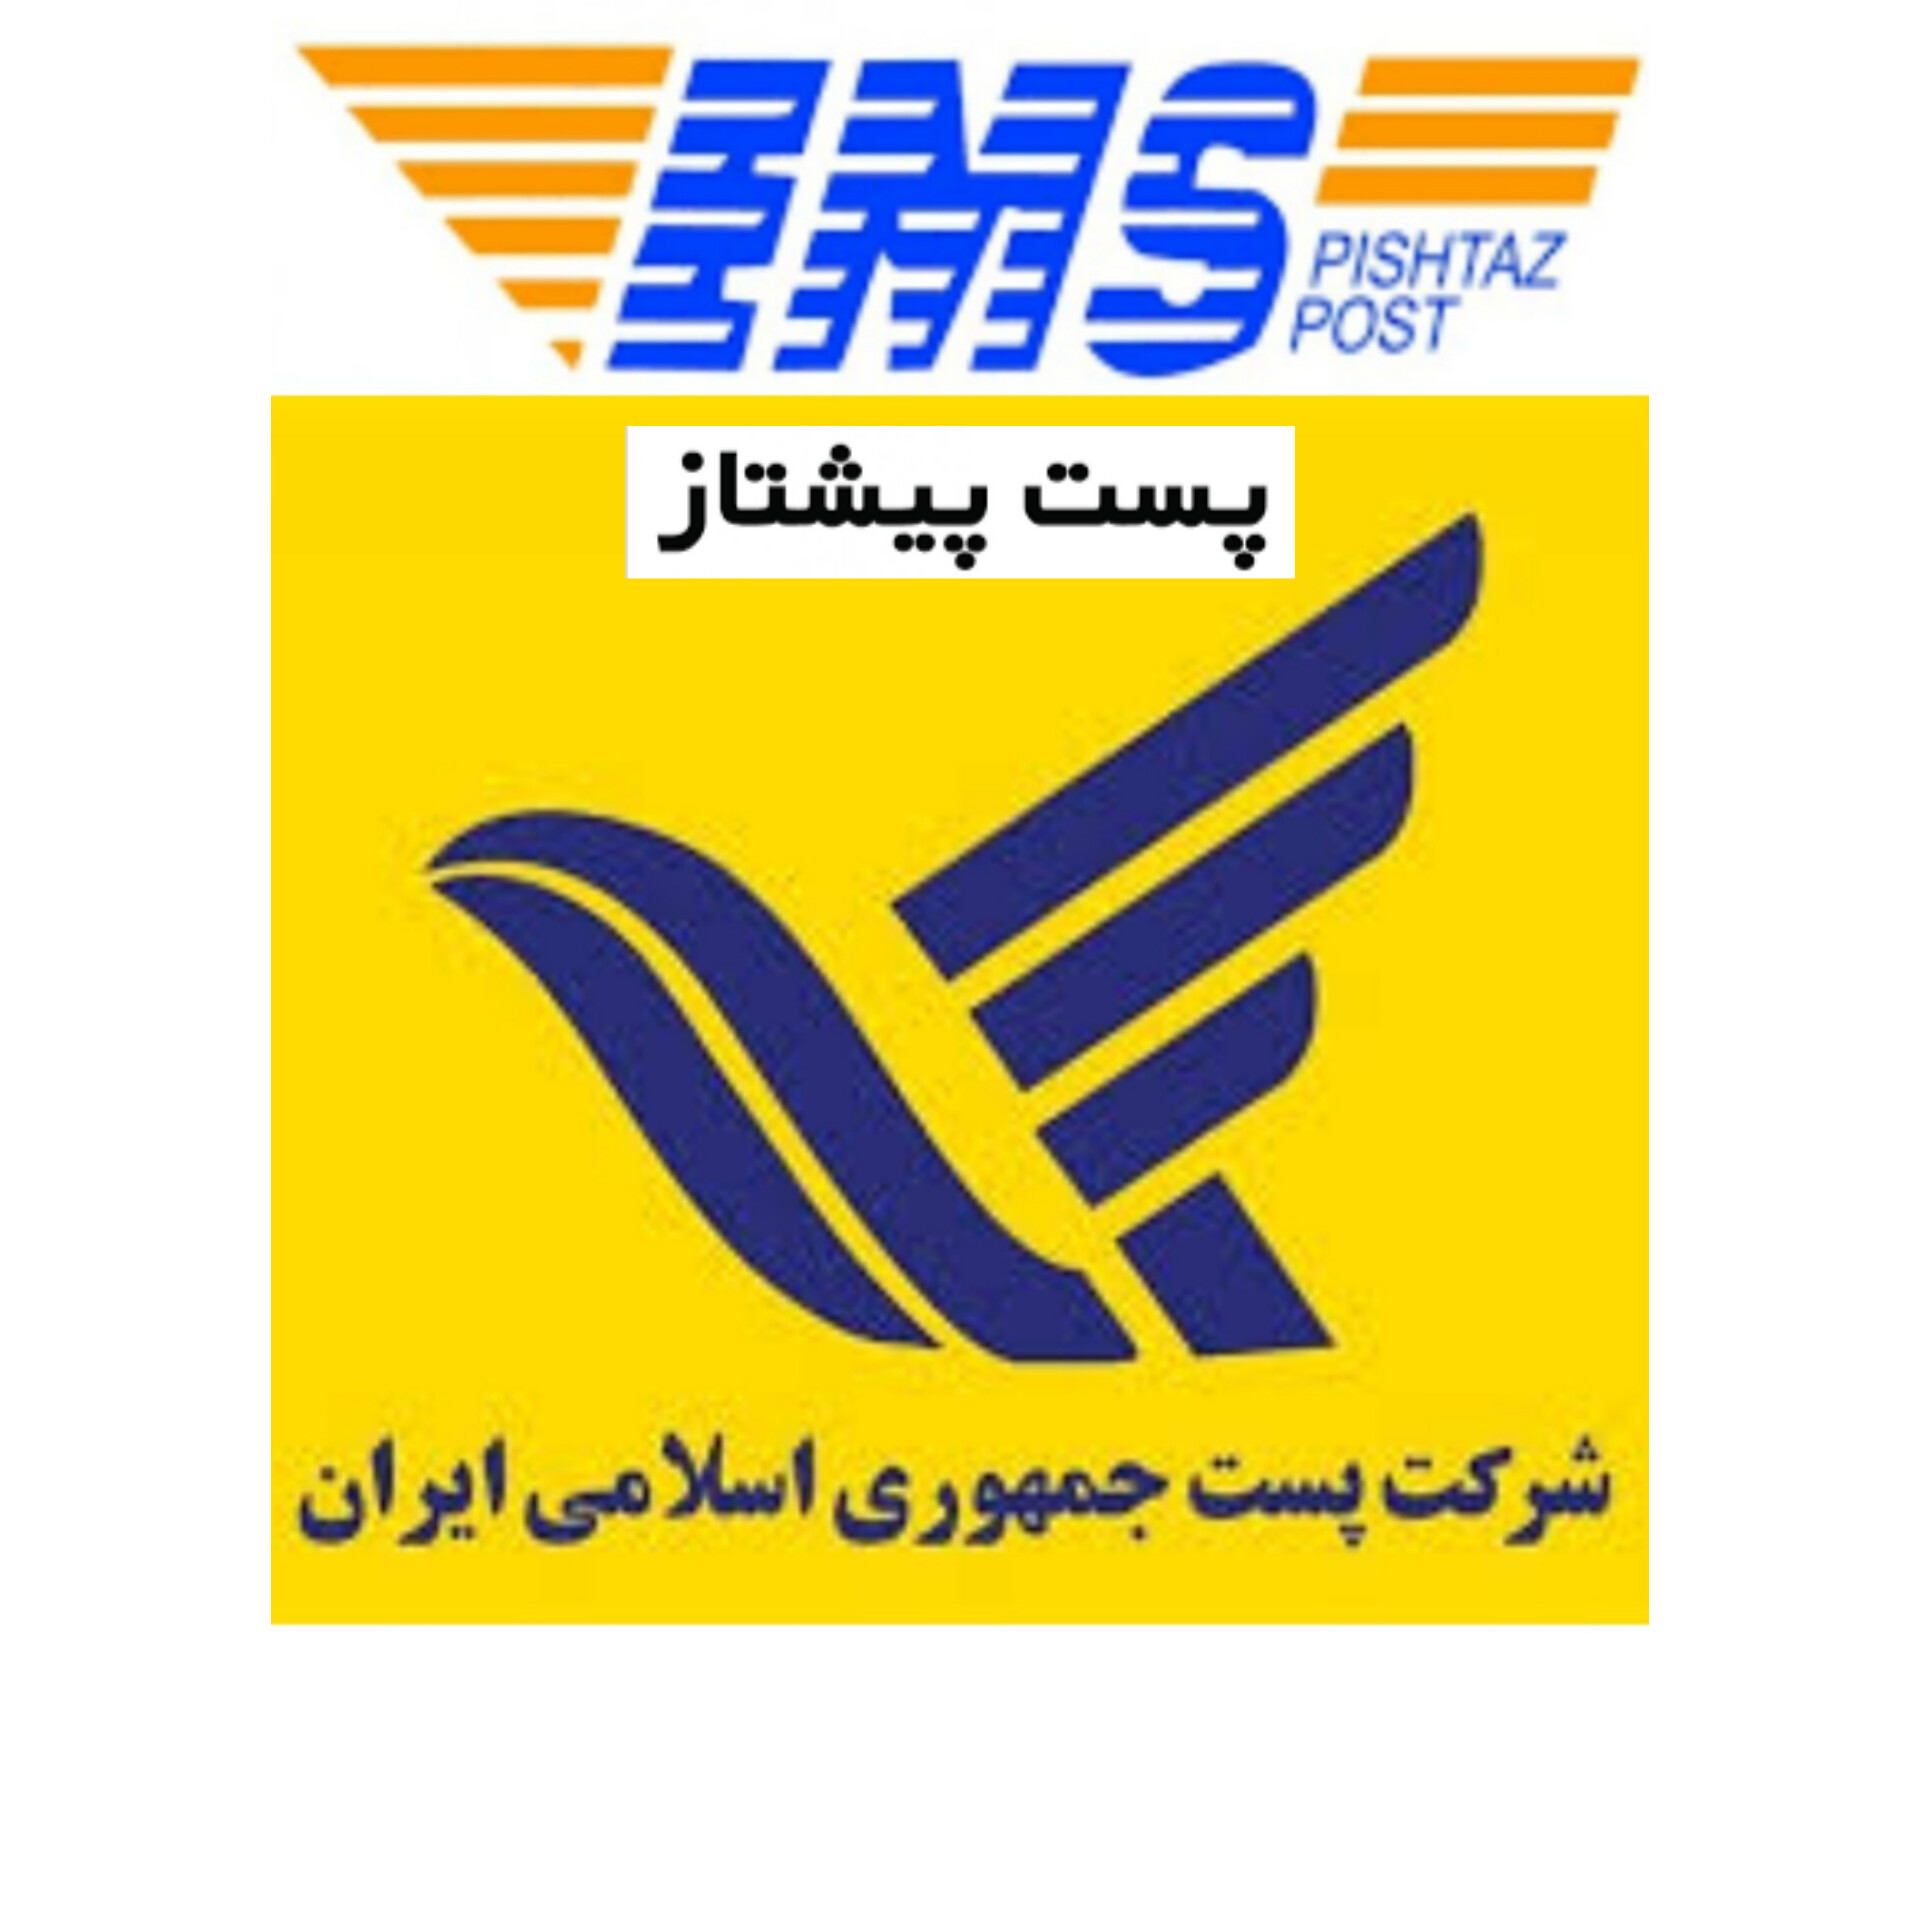 ارسال از طریق پست پیشتاز به تمامی نقاط ایران